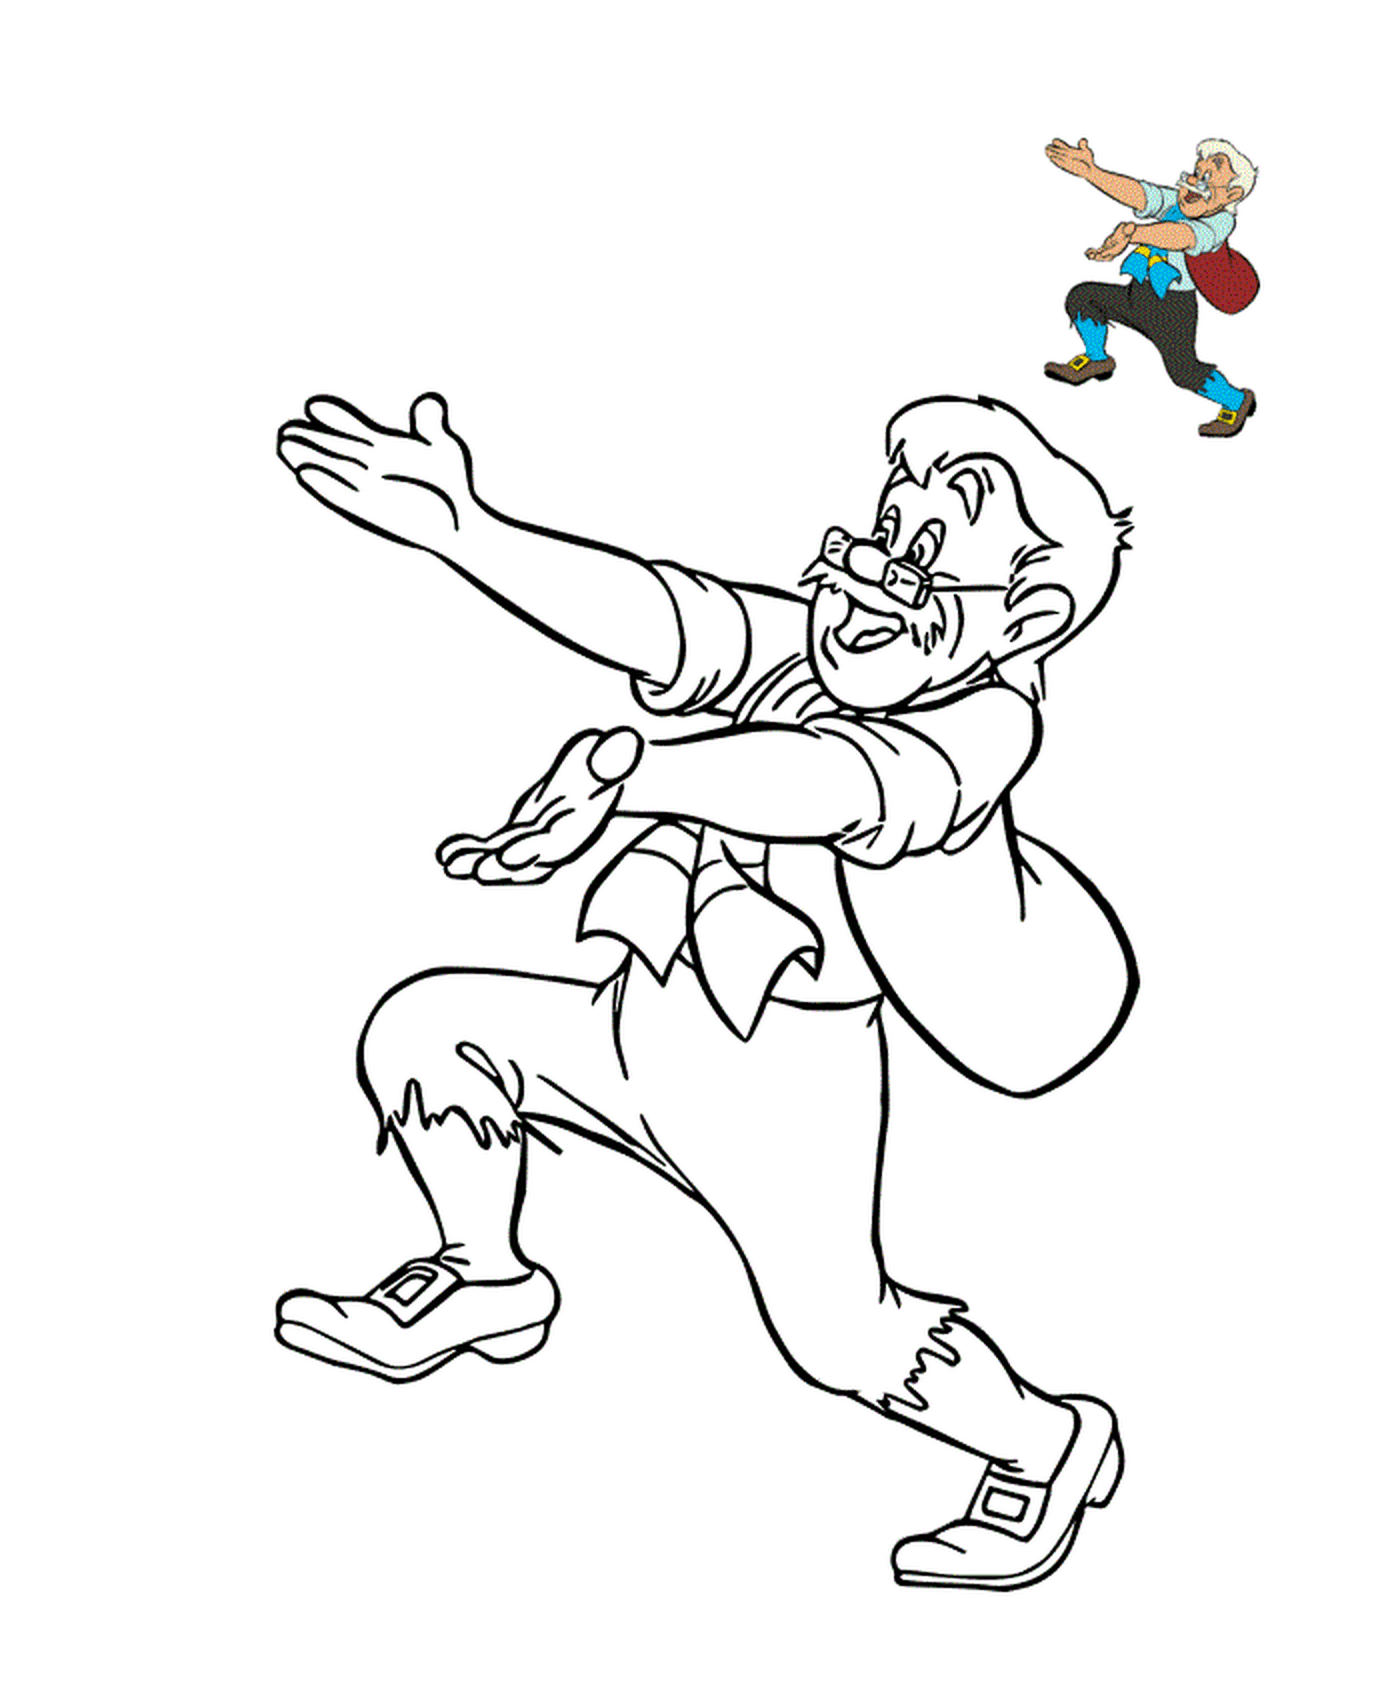  Geppetto, modesto carpinteiro italiano 